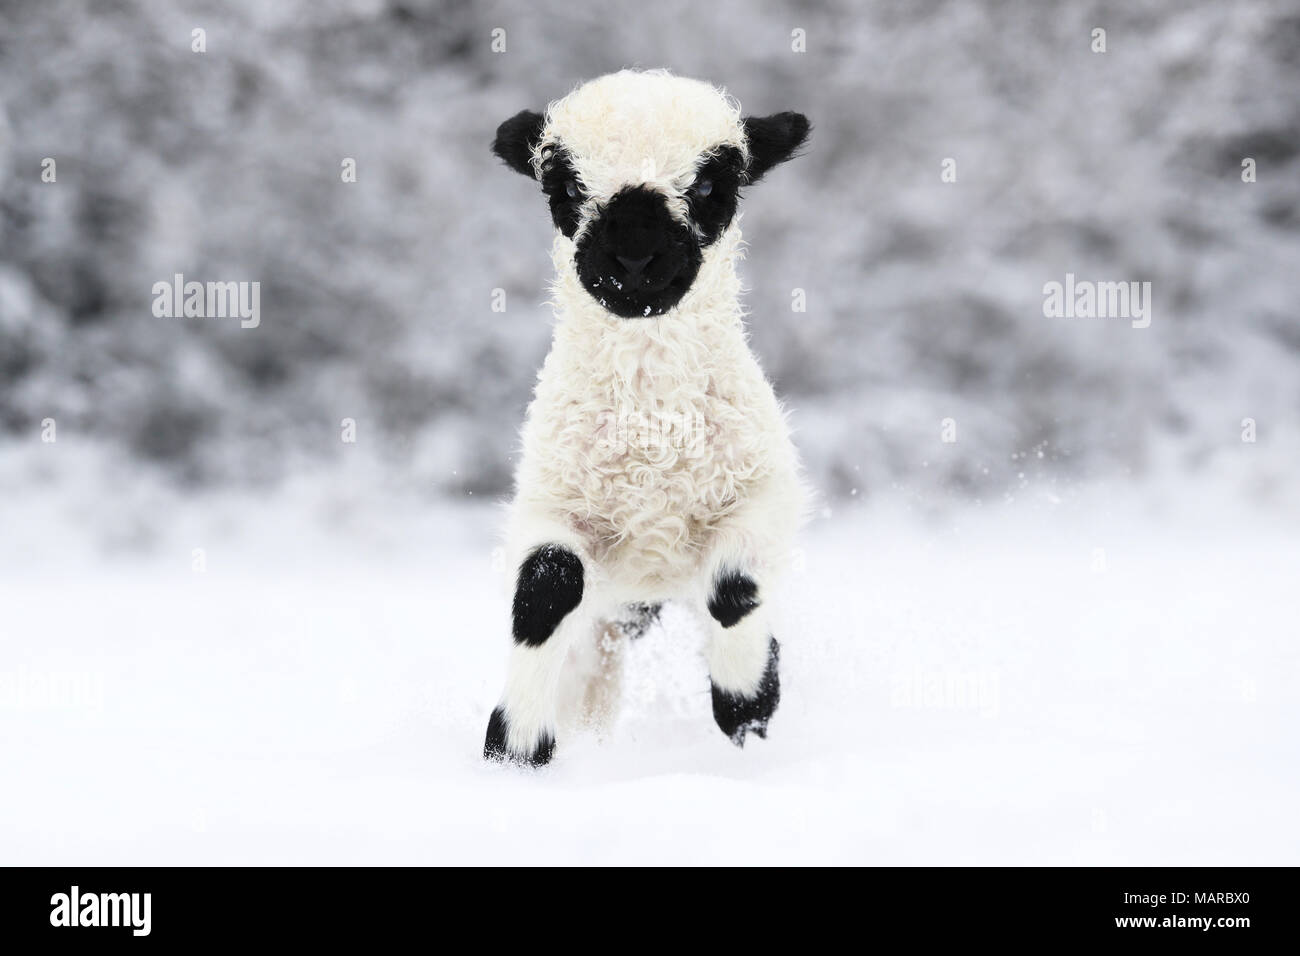 Le Valais les moutons. L'agneau (2 semaines) s'exécutant dans la neige. Allemagne Banque D'Images